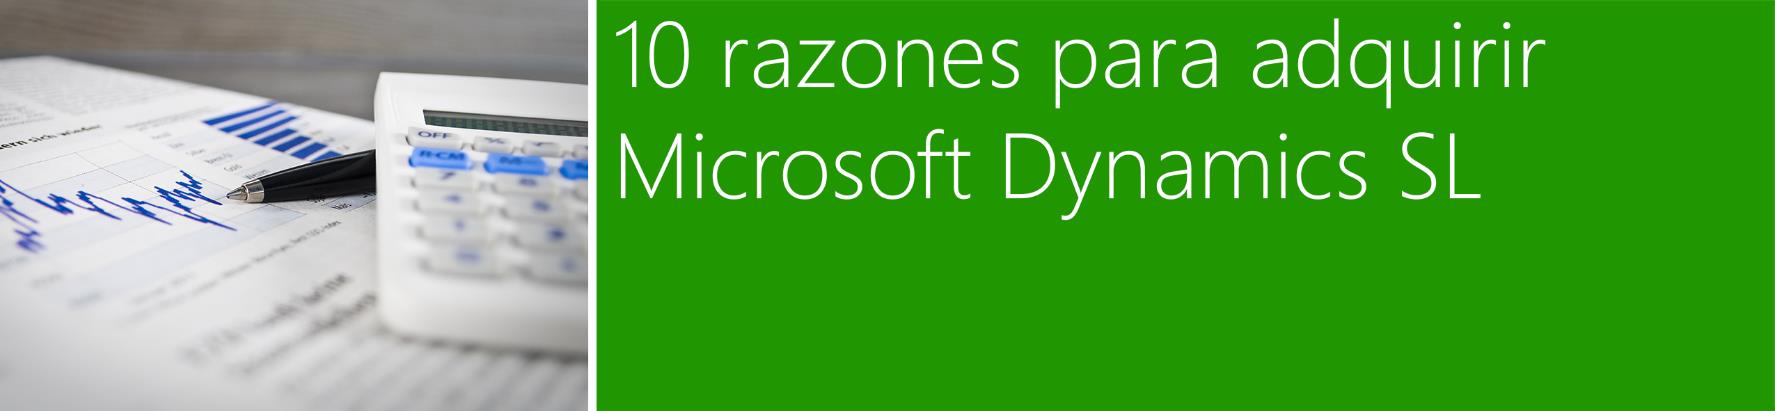 Microsoft Dynamics SL es una solución ERP para organizaciones de tamaño mediano centradas en proyectos.